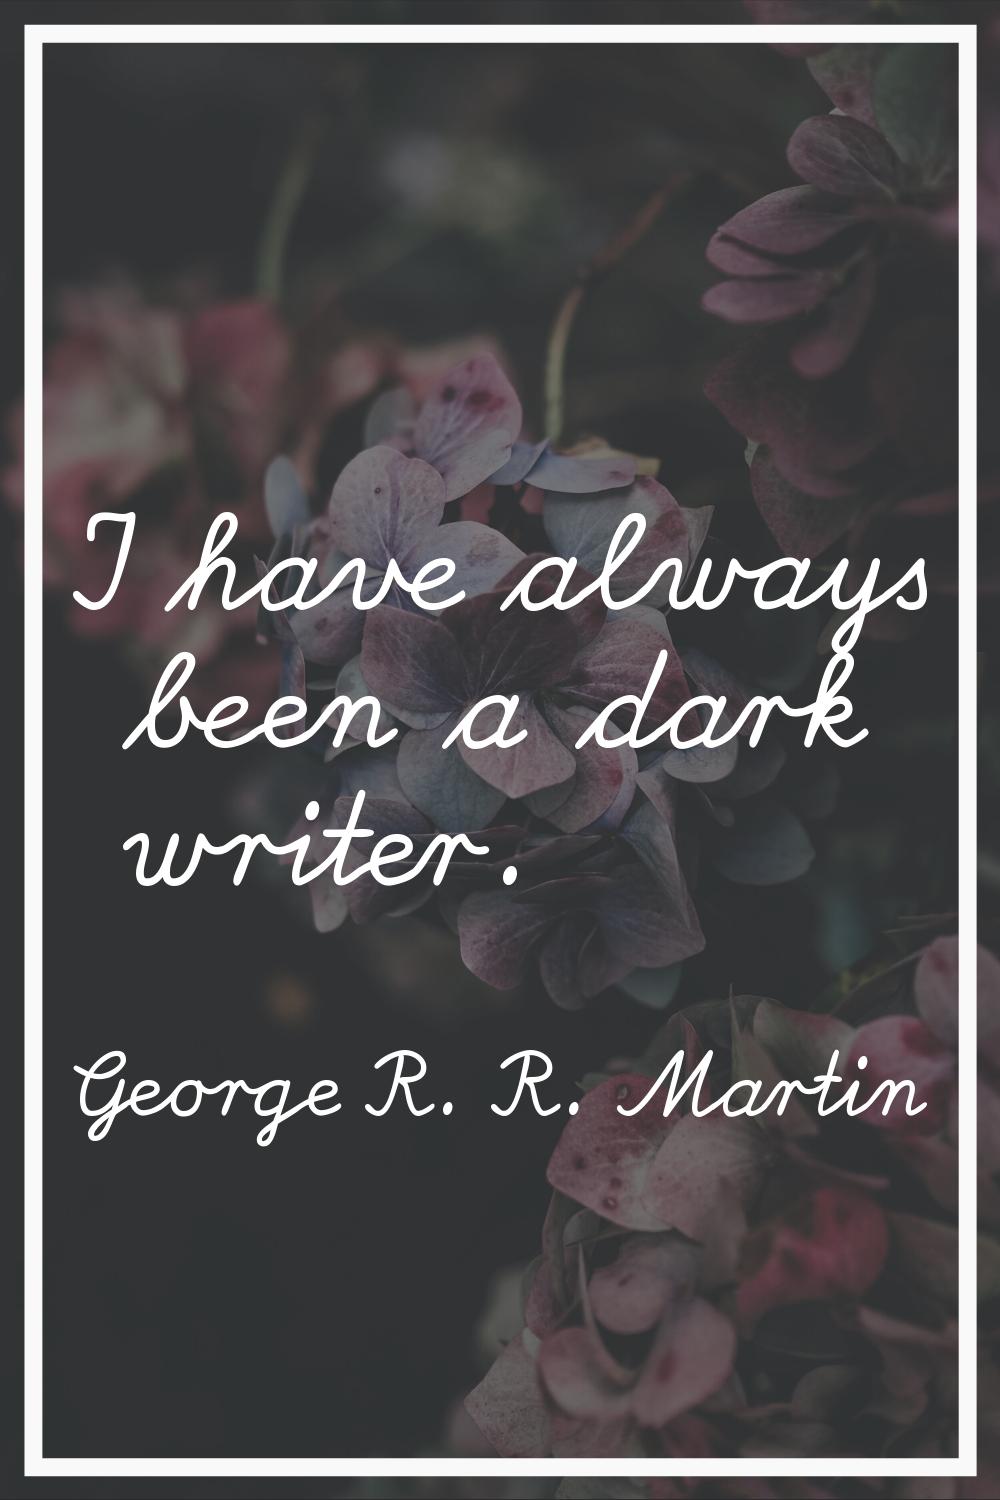 I have always been a dark writer.